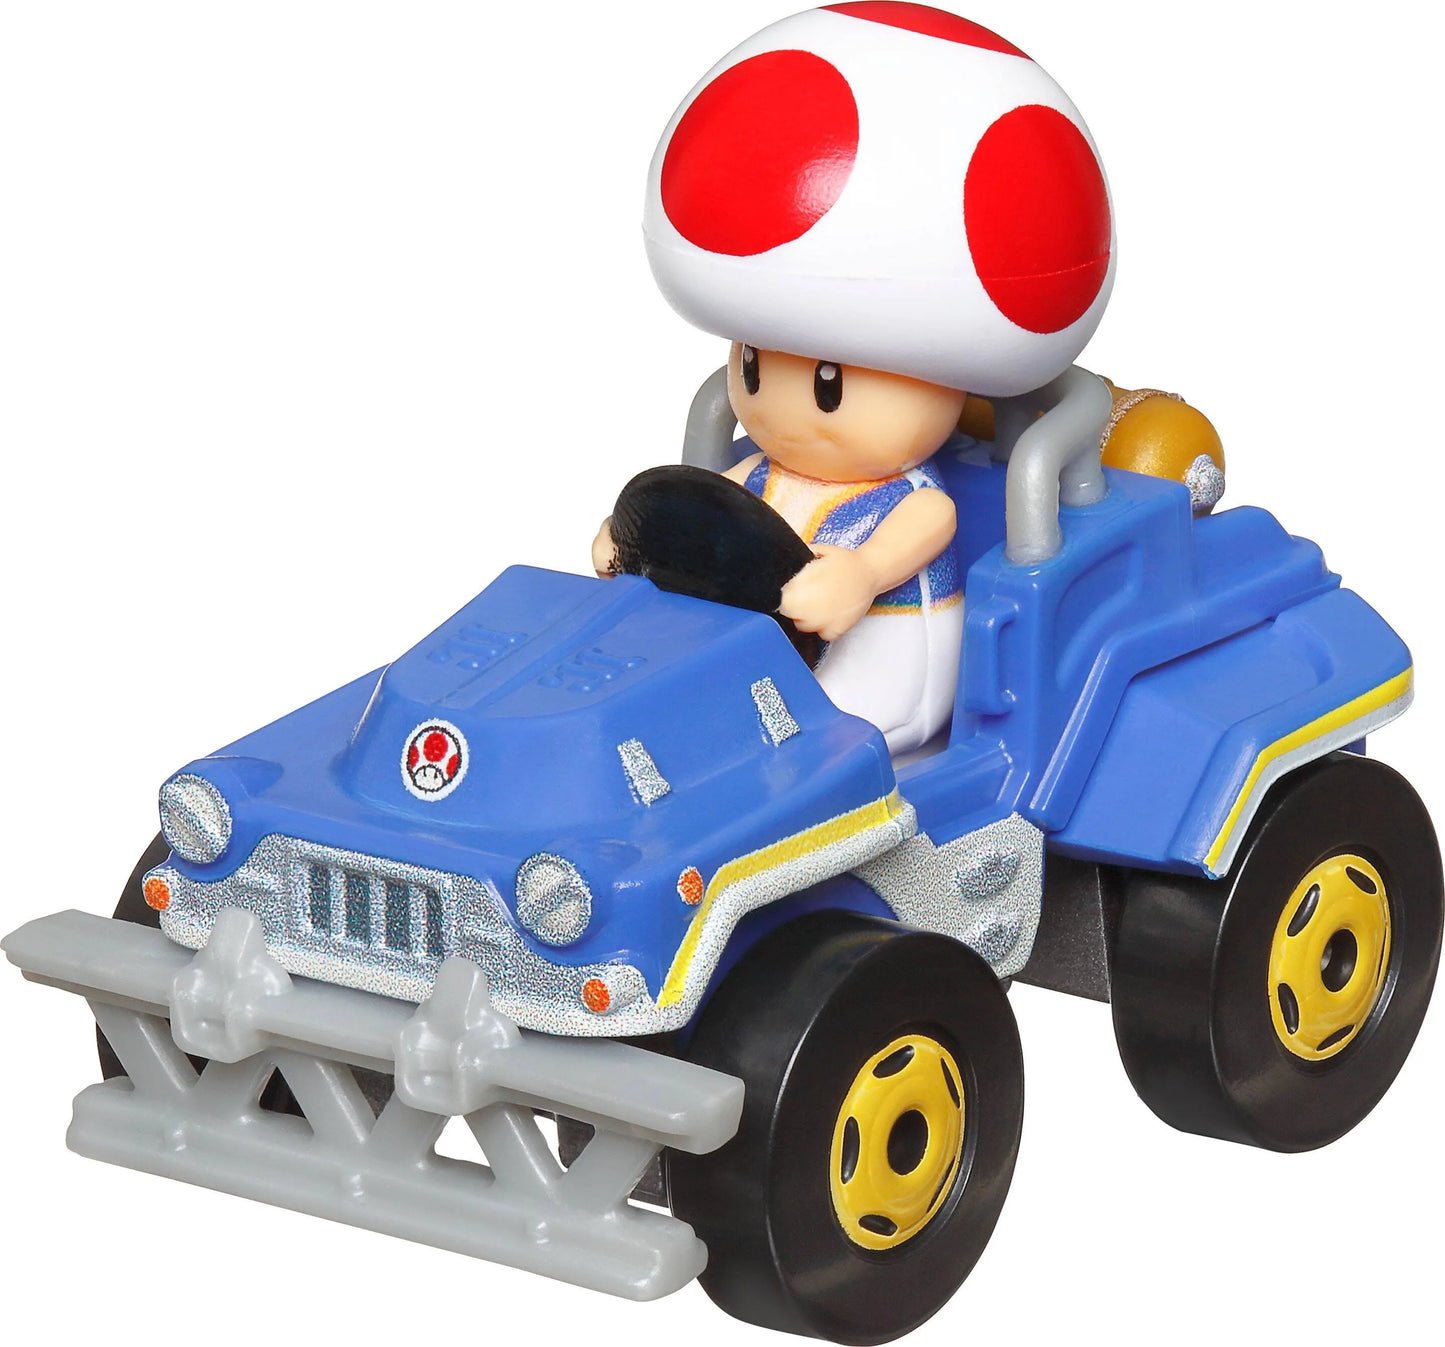 Hot Wheels The Super Mario Bros. Movie Toad